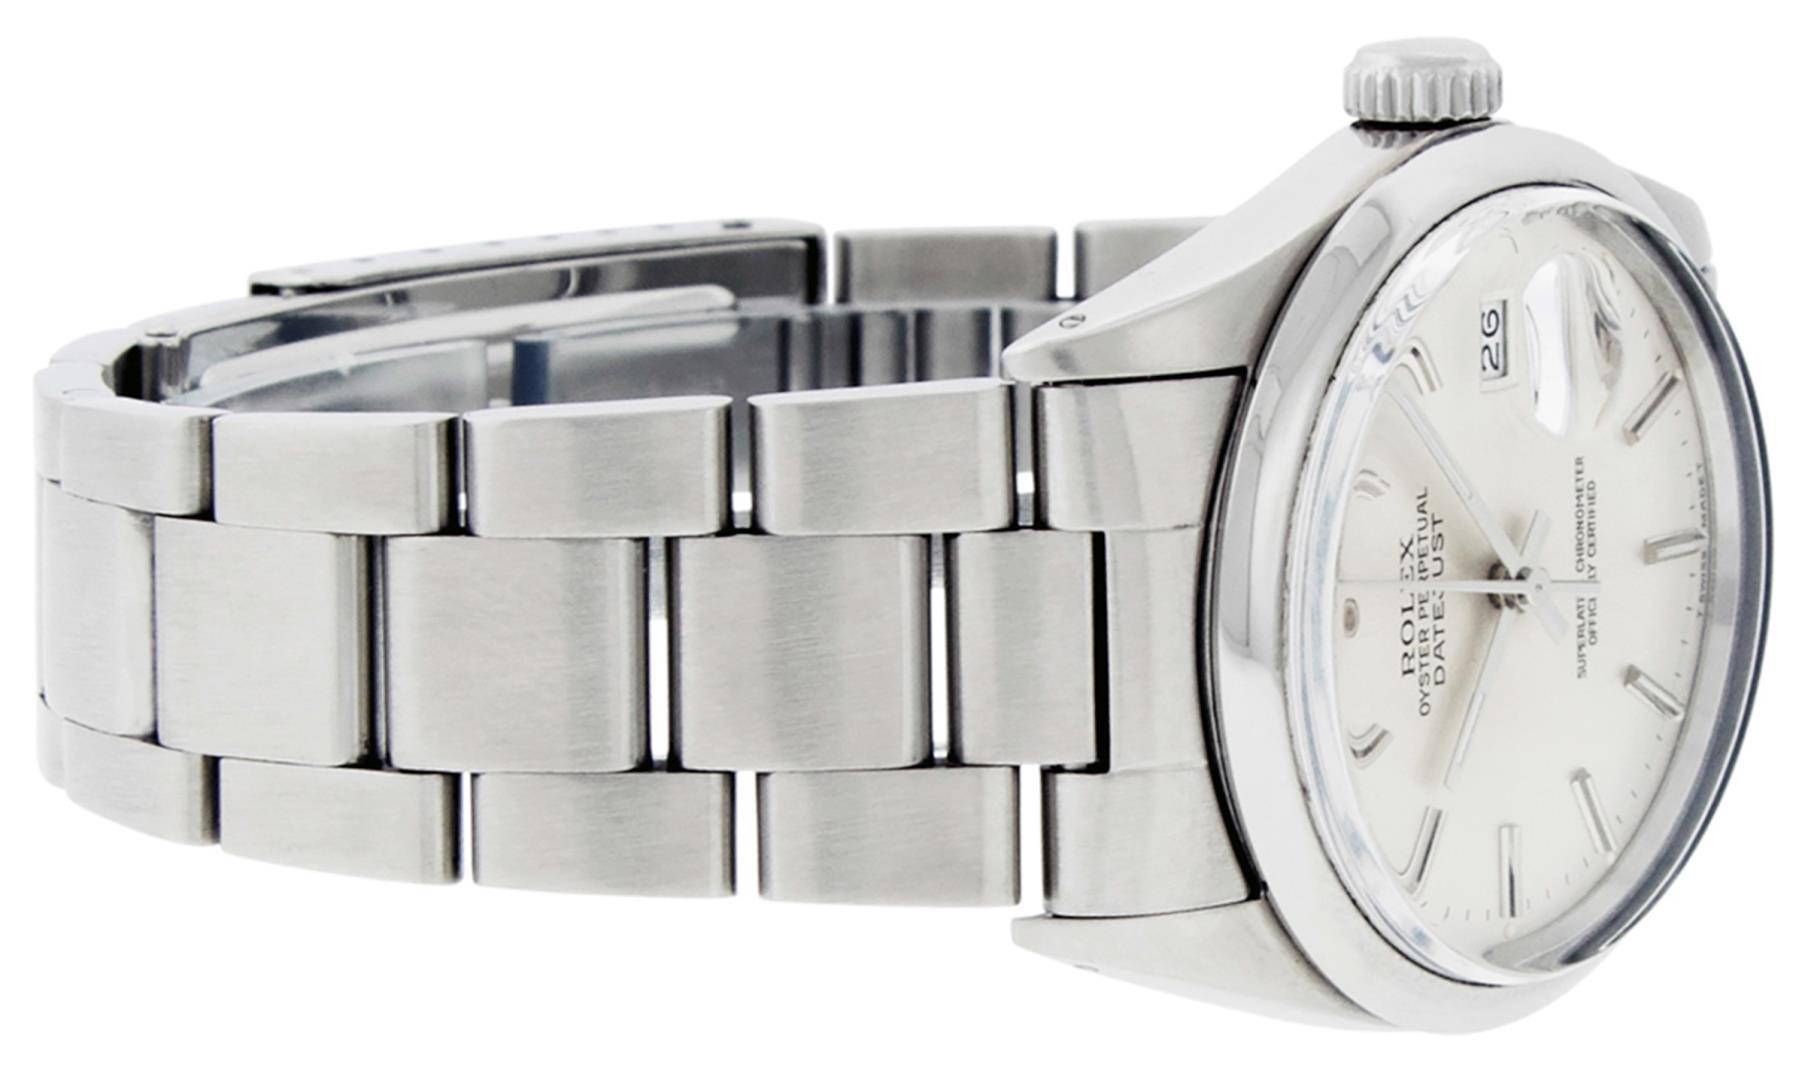 Rolex Men's Stainless Steel Silver Index Datejust Wristwatch